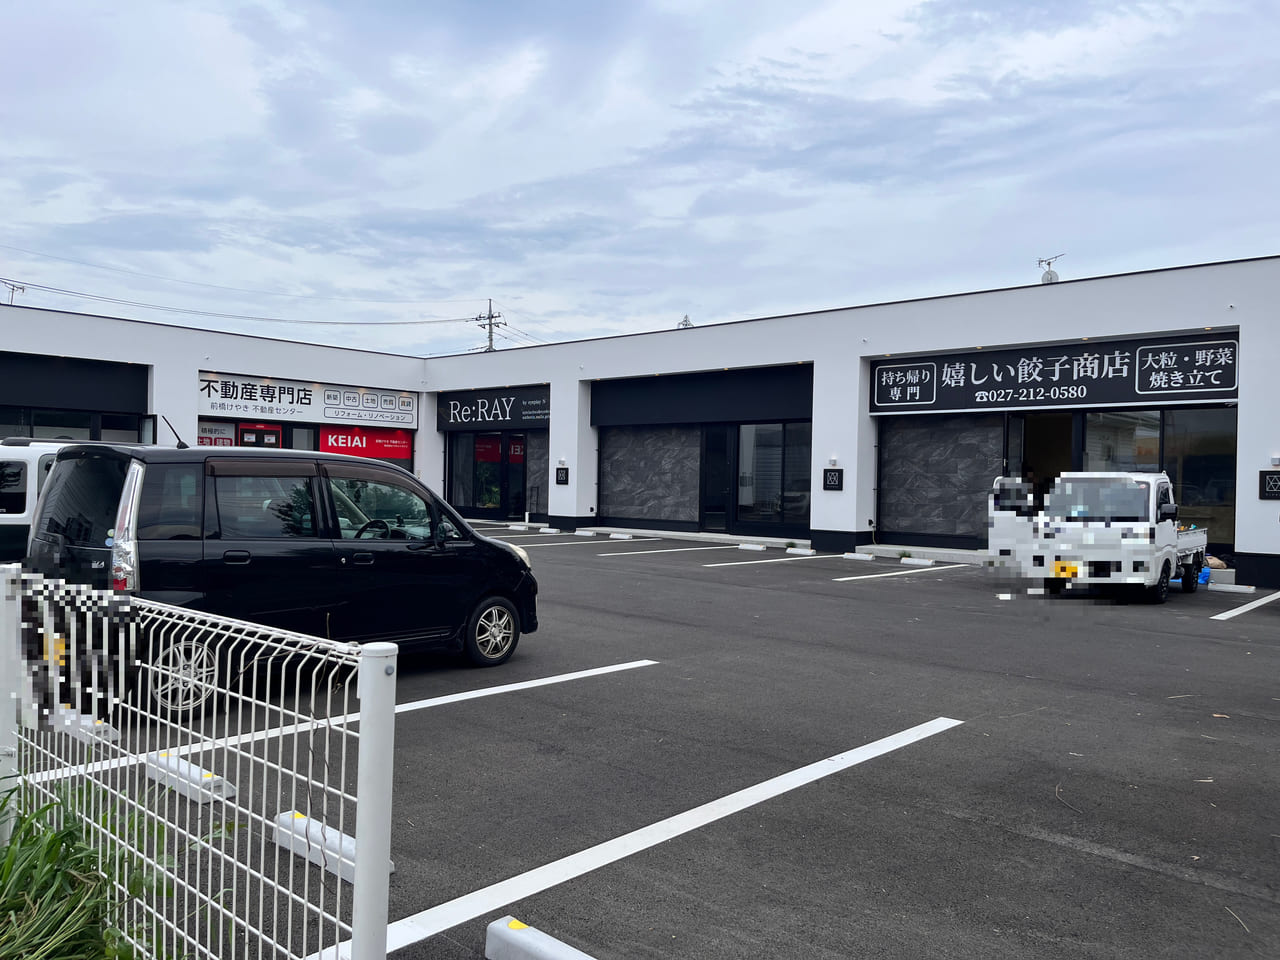 「嬉しい餃子商店 前橋六供店」がオープンする「vivace」の外観